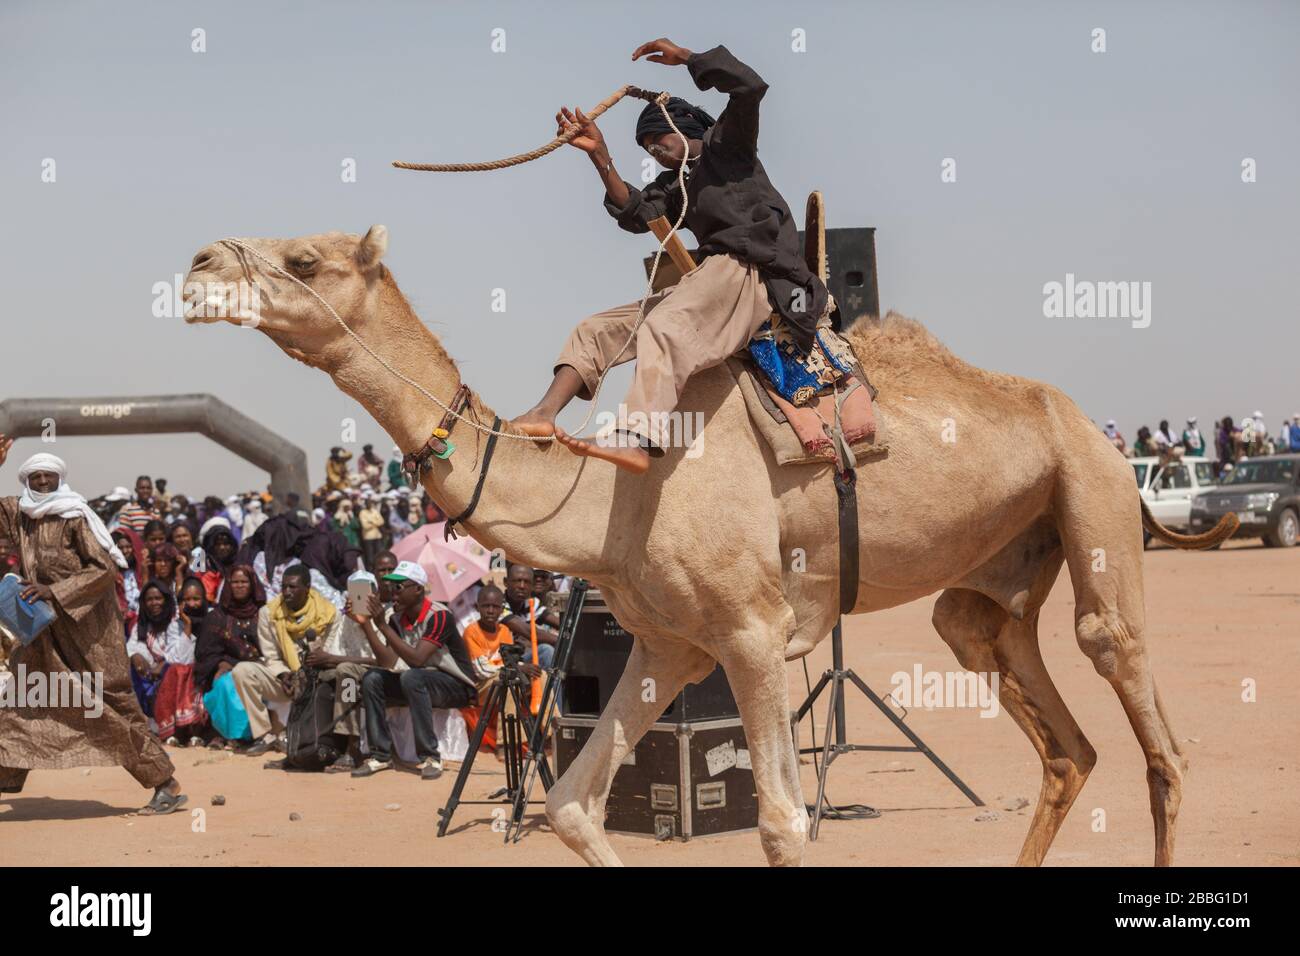 Ingall, Niger : Camalrennen während des Cure Salee Nomadenfestivals Stockfoto